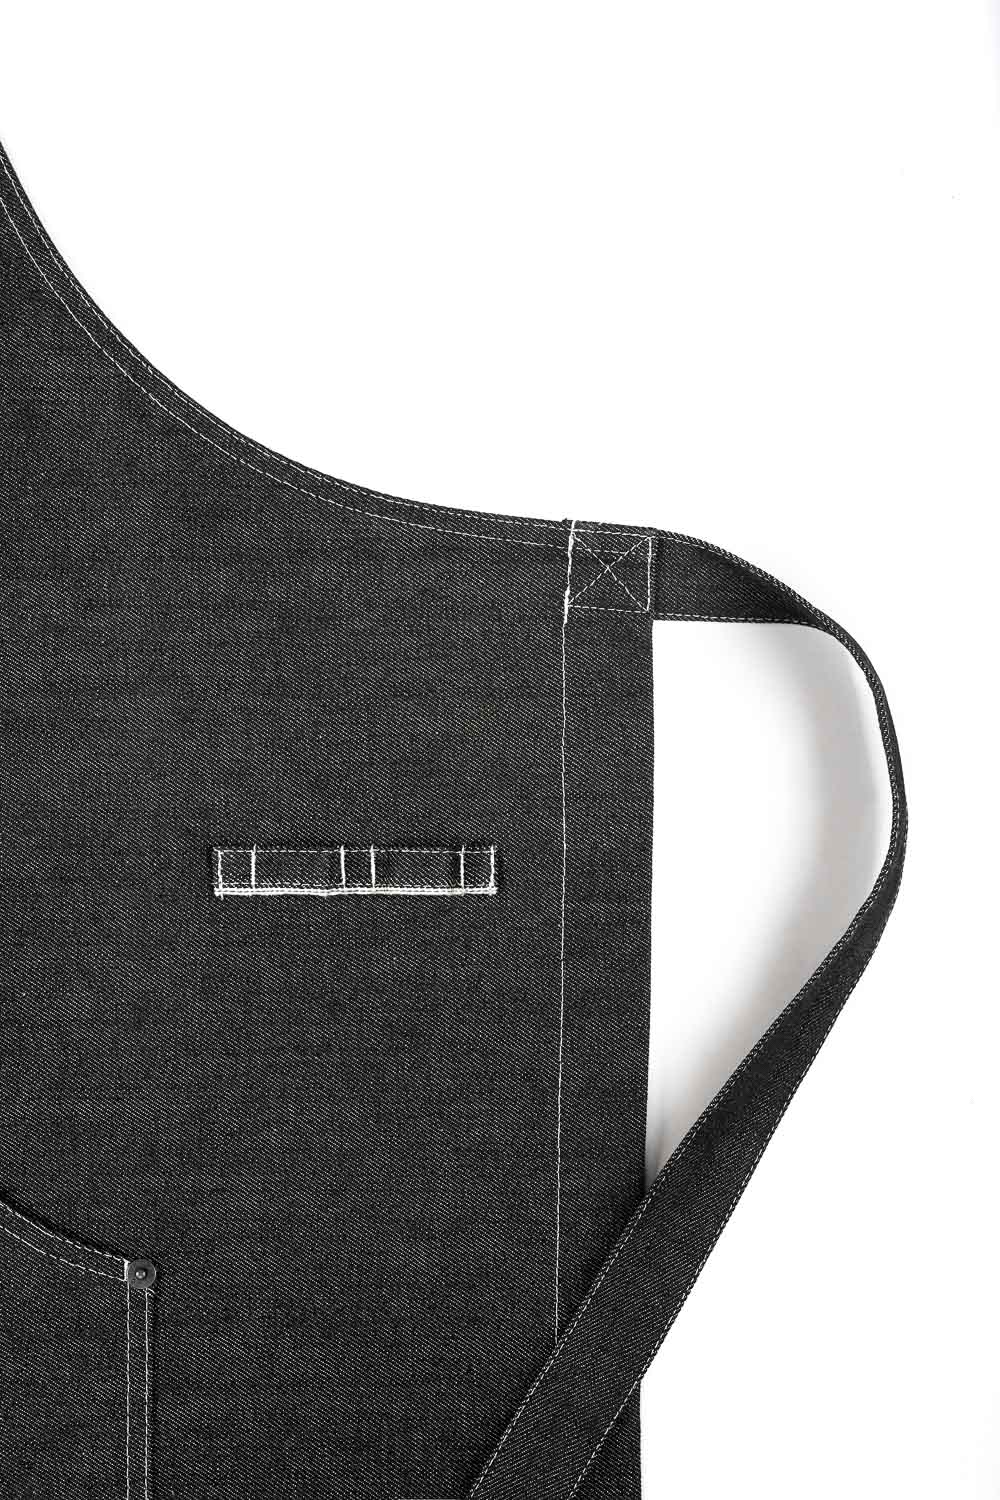 A close up of a stripe of Black denim apron Pando Moto 